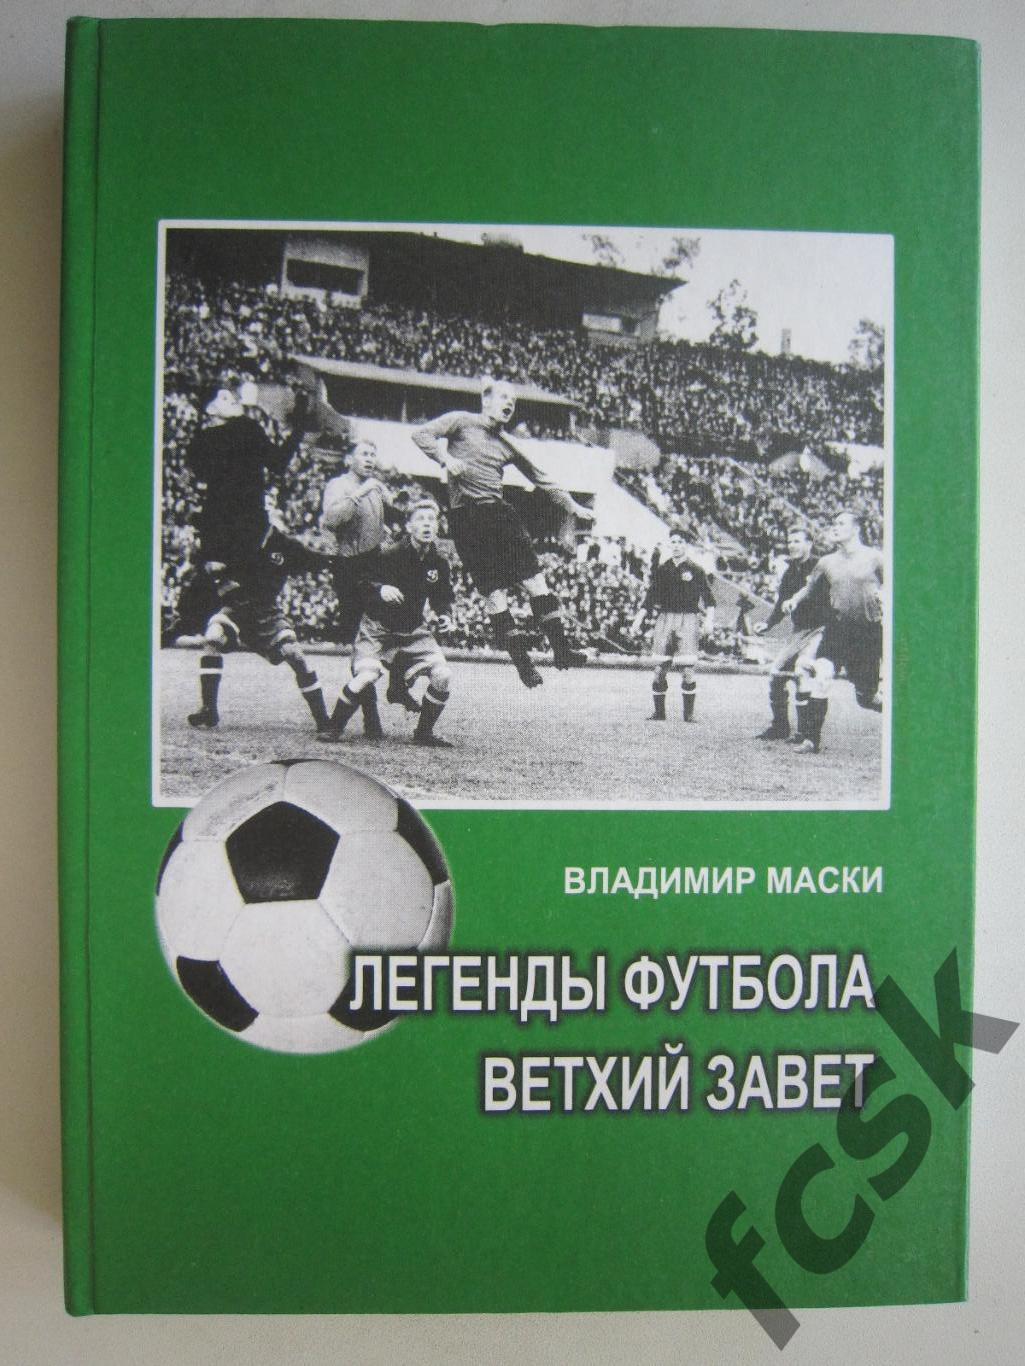 В.Маски. Легенды футбола. Ветхий завет. Ужгород, 2012 (ф3)